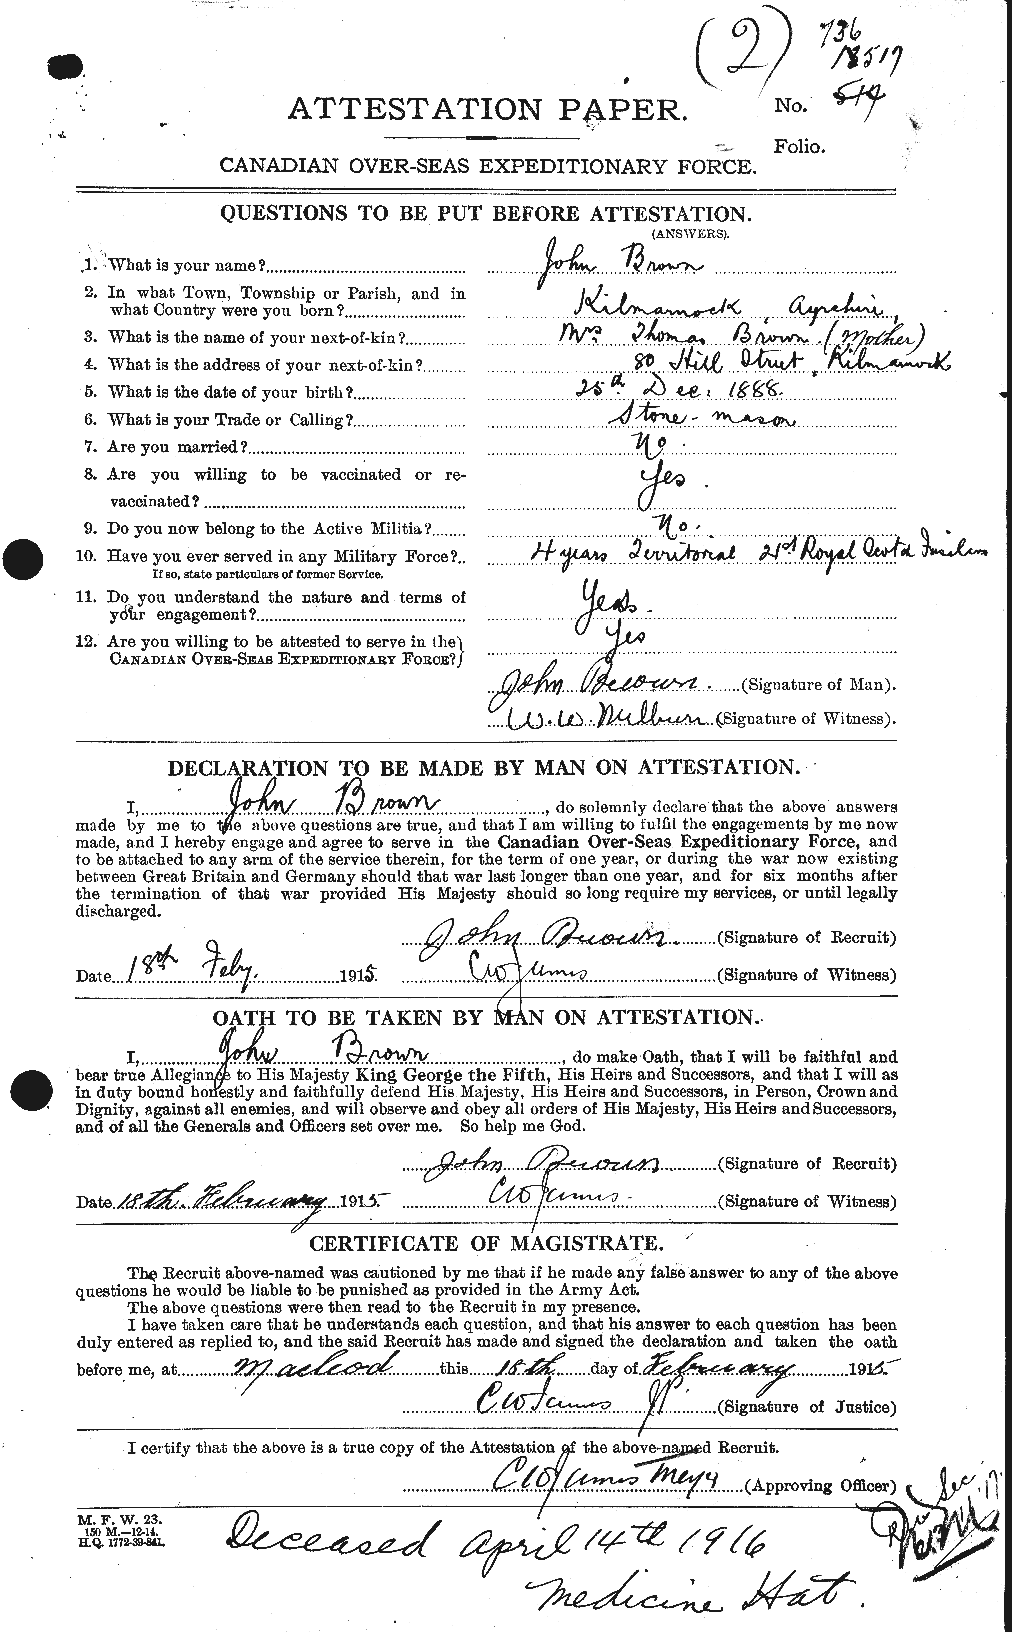 Dossiers du Personnel de la Première Guerre mondiale - CEC 269629a